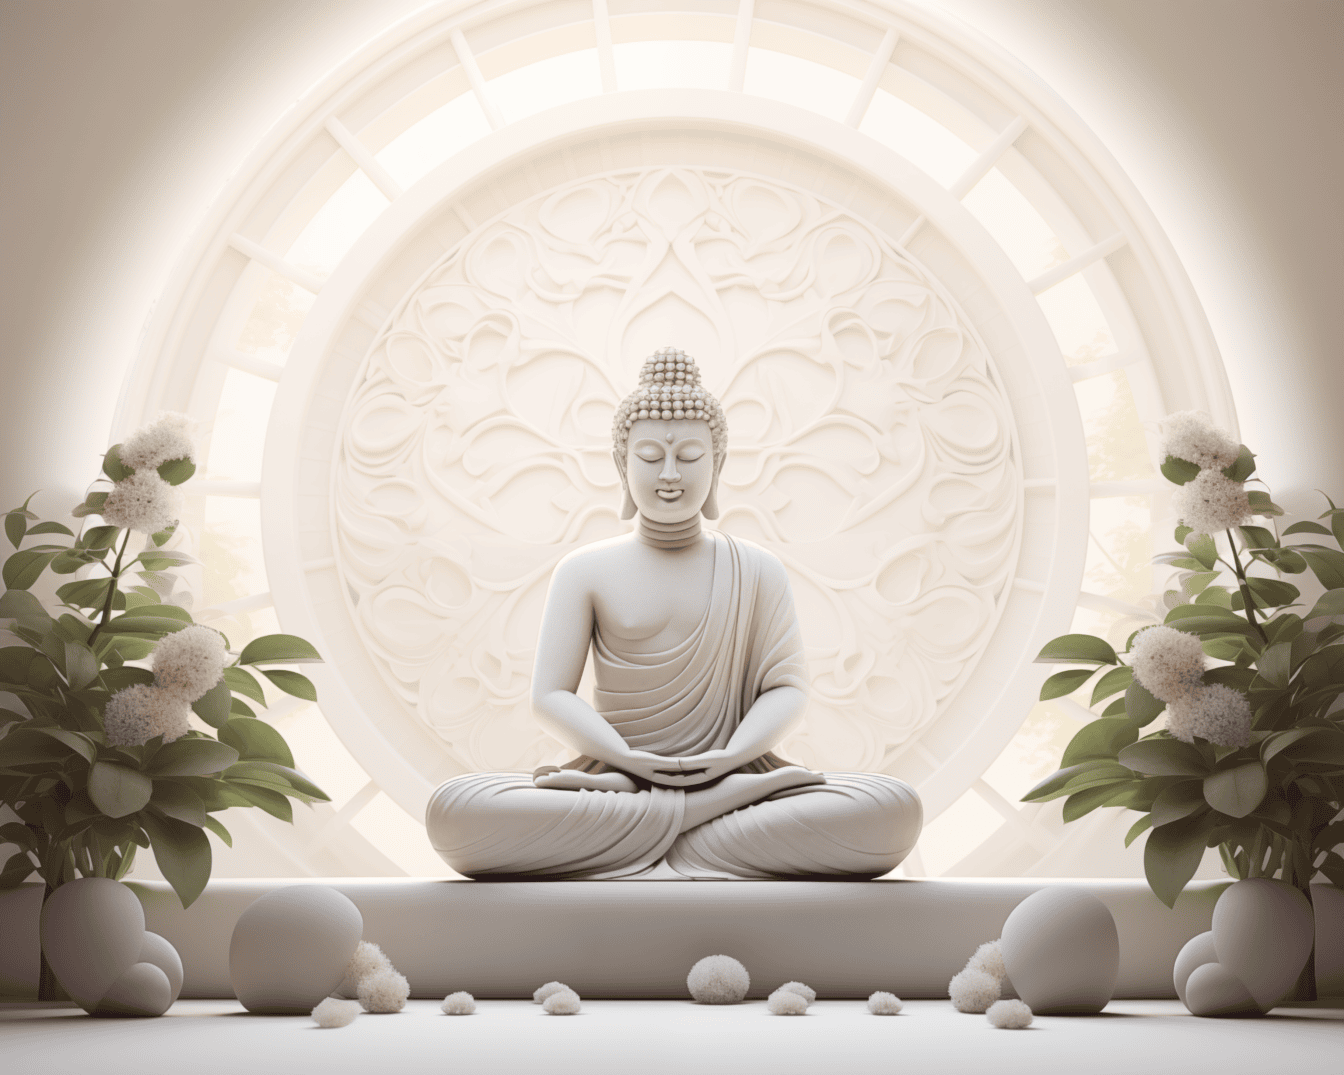 Csodálatos fehér Buddha szobor, aki lótusz helyzetben ül és fehér virágok mellett meditál